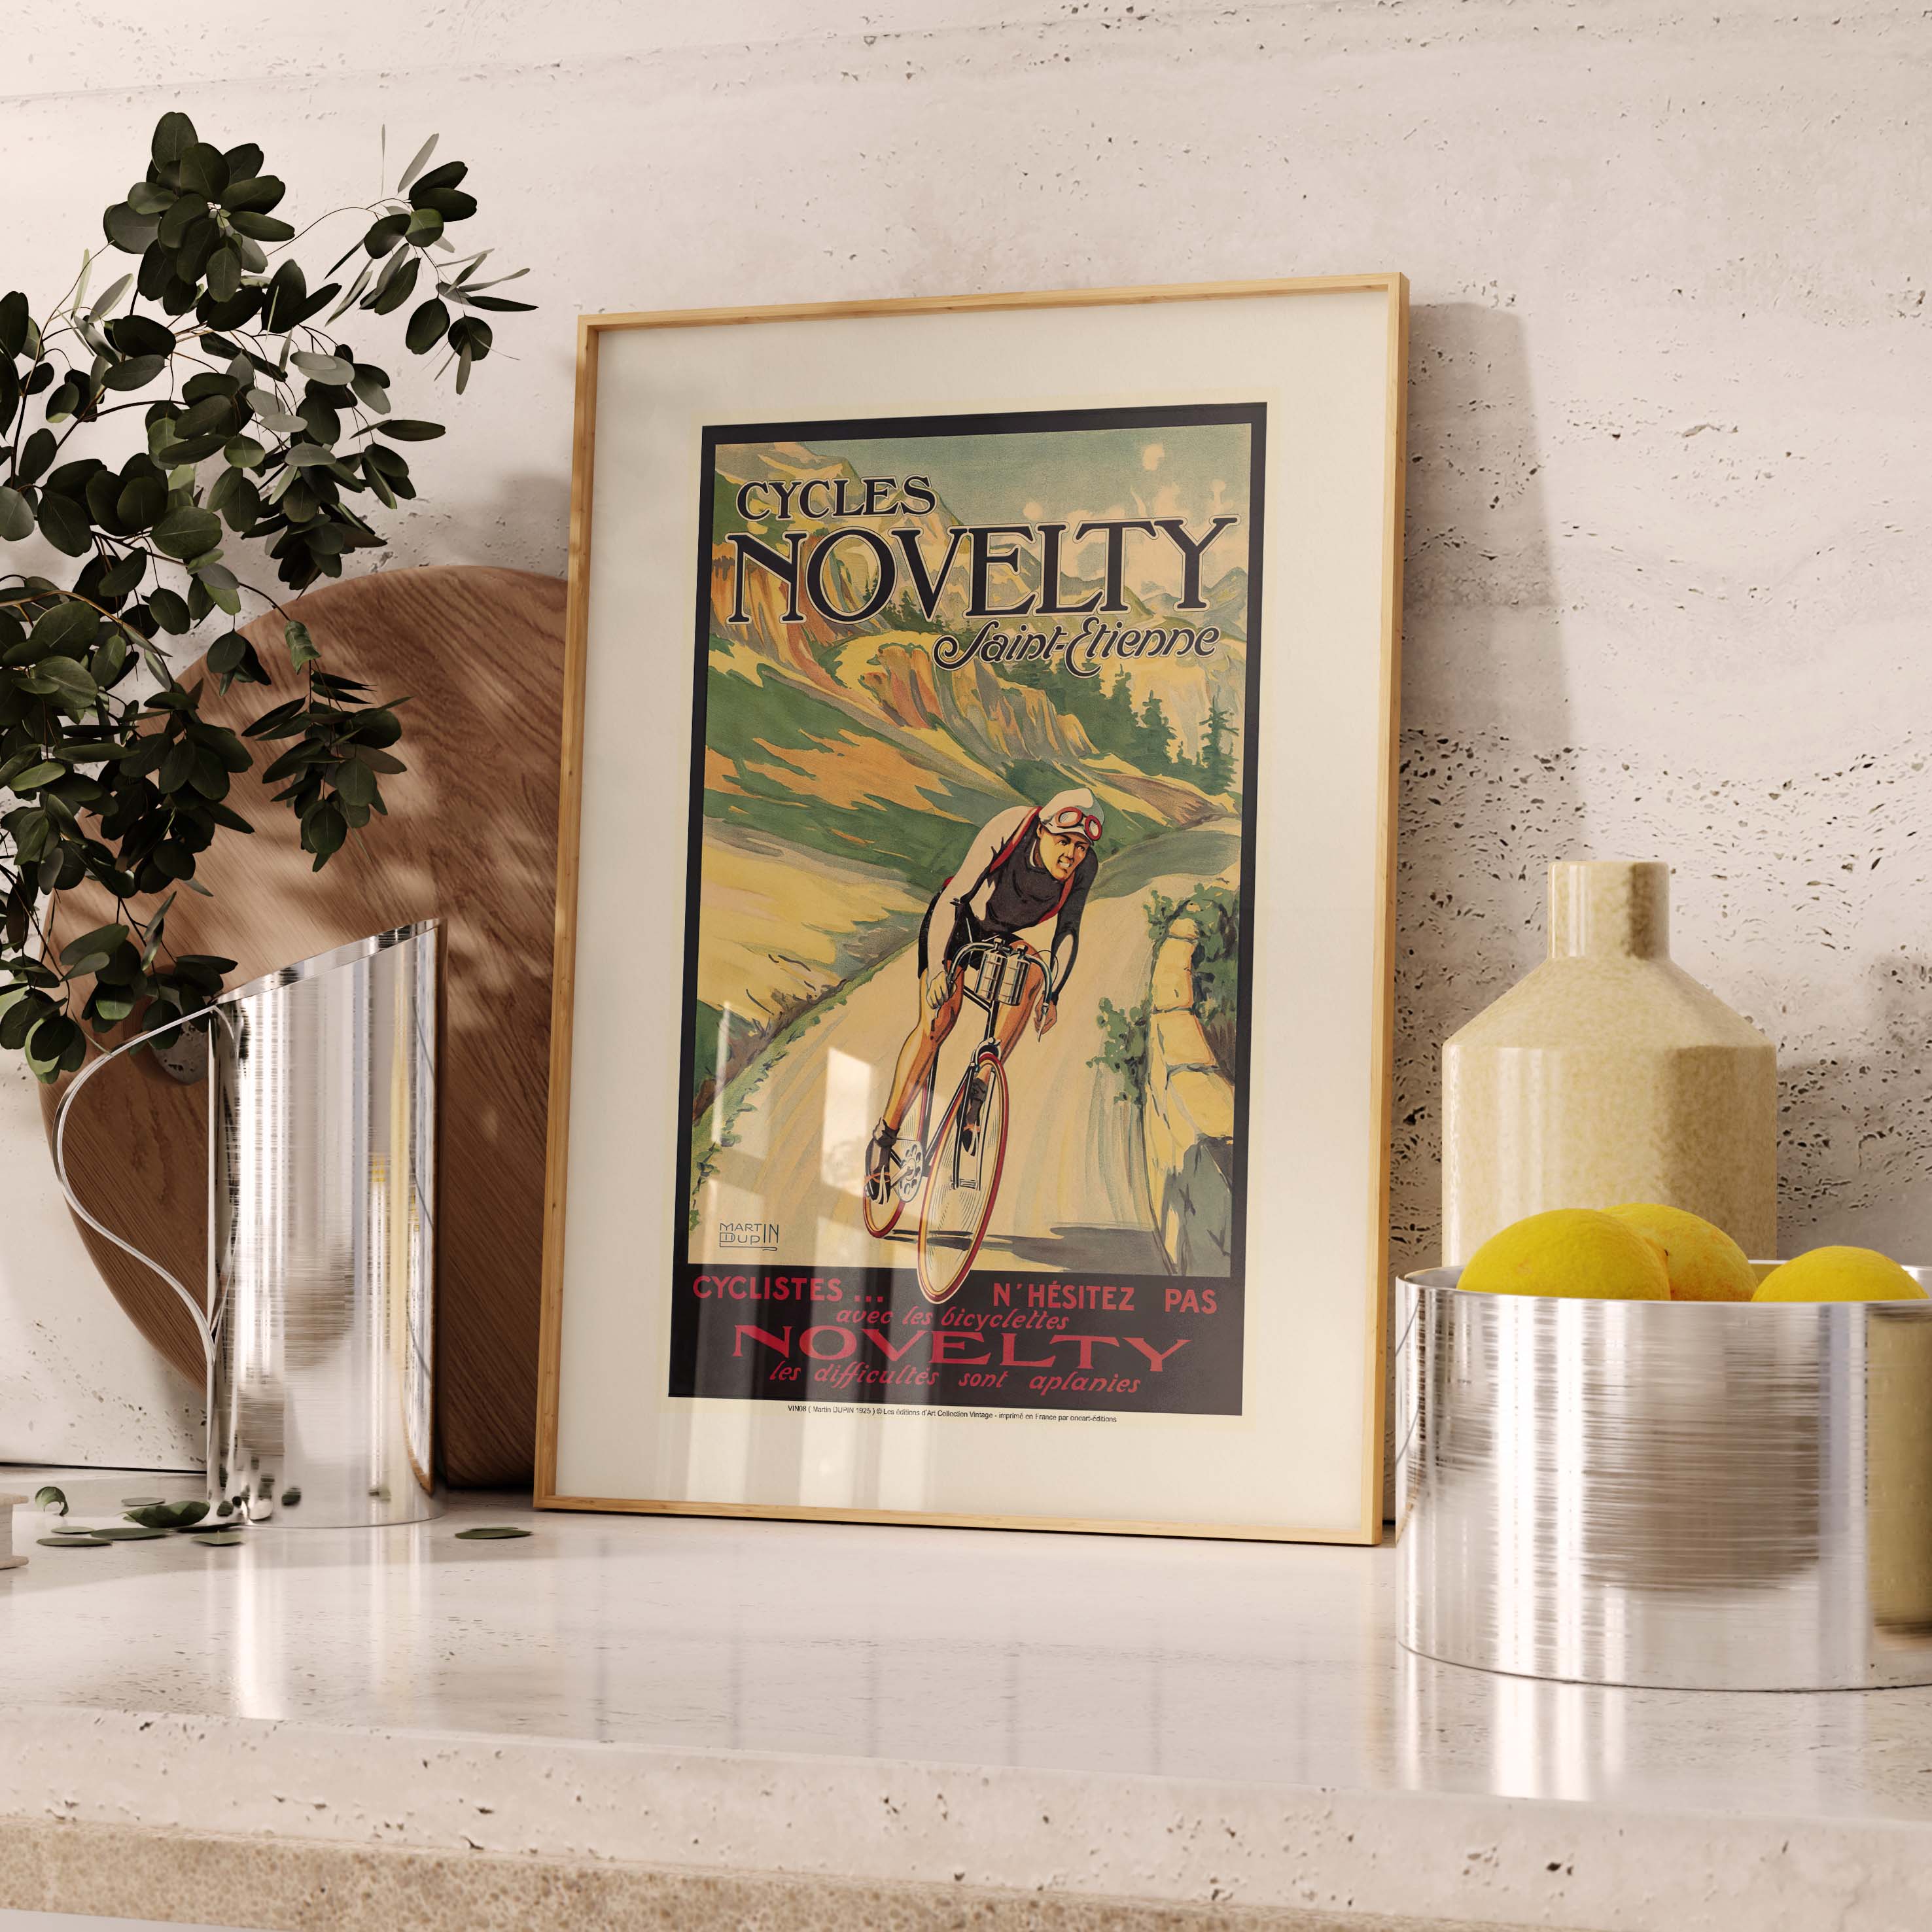 Affiche publicité vintage - Cycles Novelty-oneart.fr